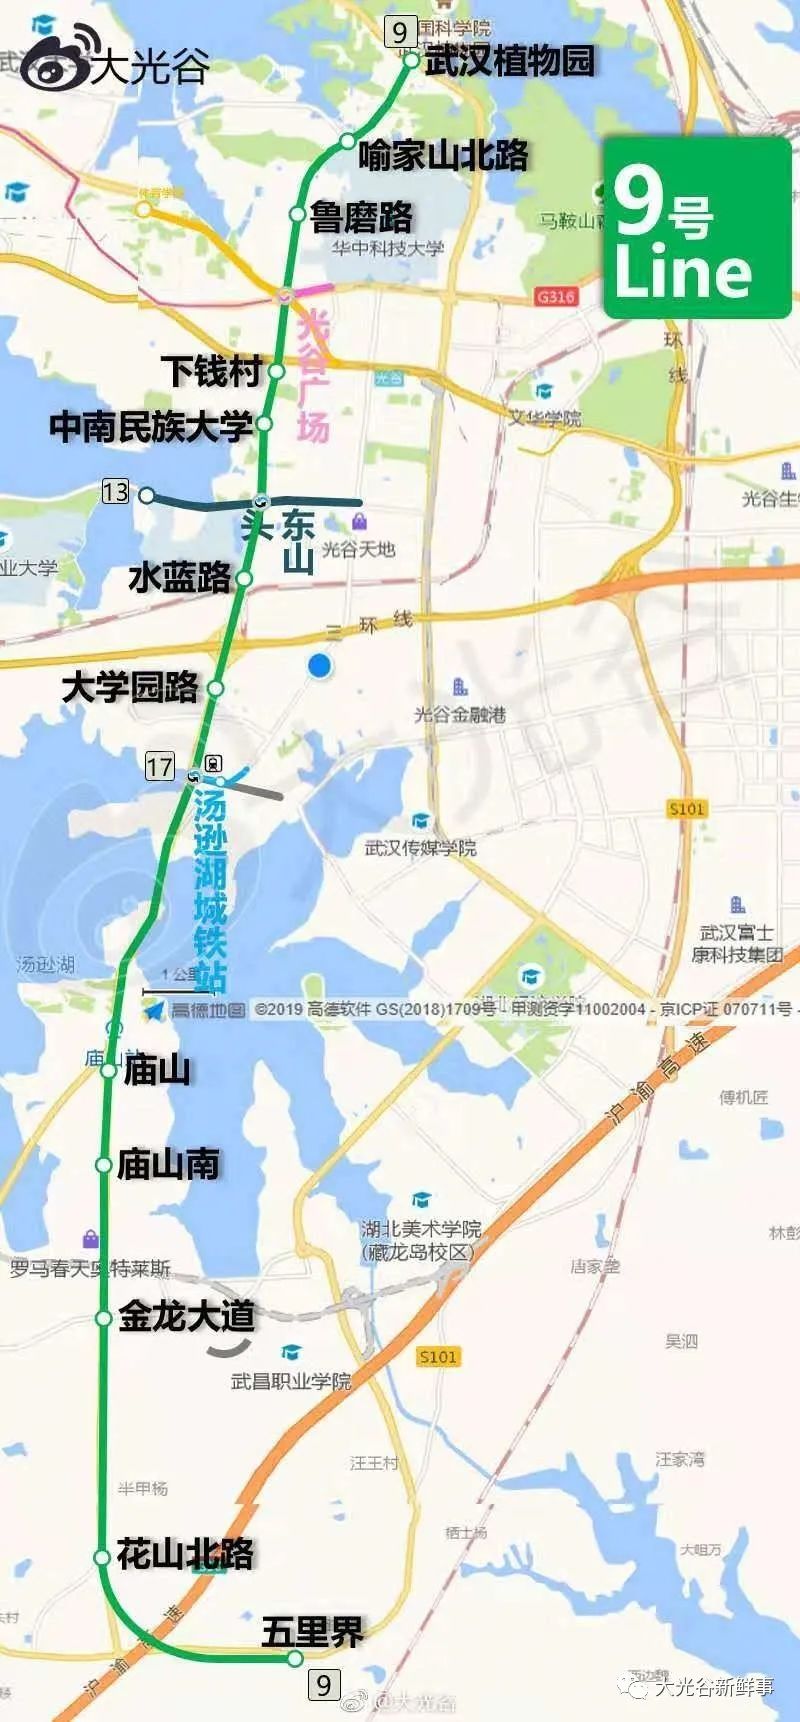 武汉第五轮地铁规划要开始啦!尚未批复的线网多达23条